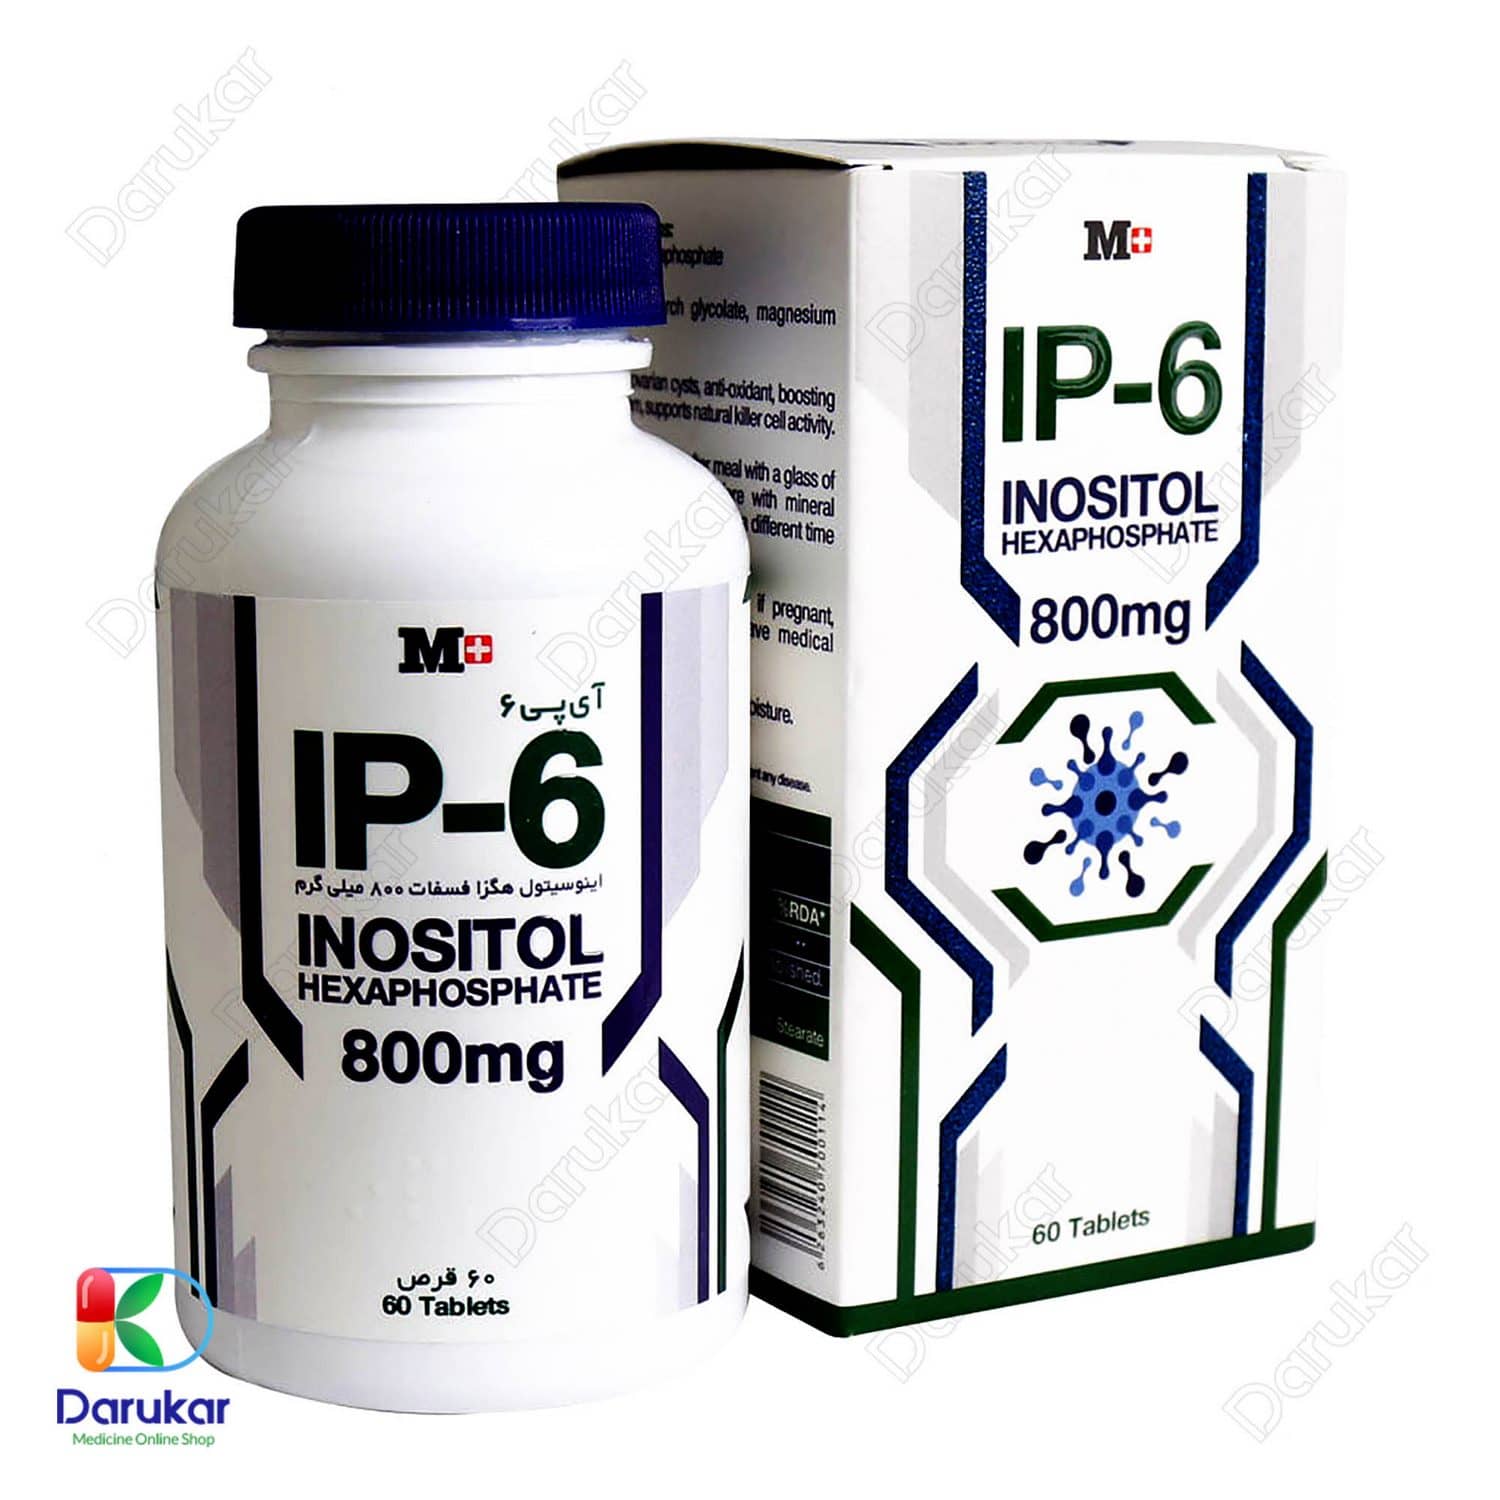 M Plus IP 6 Inositol Hexaphosphate 800 mg 60 TabletsImage Gallery1